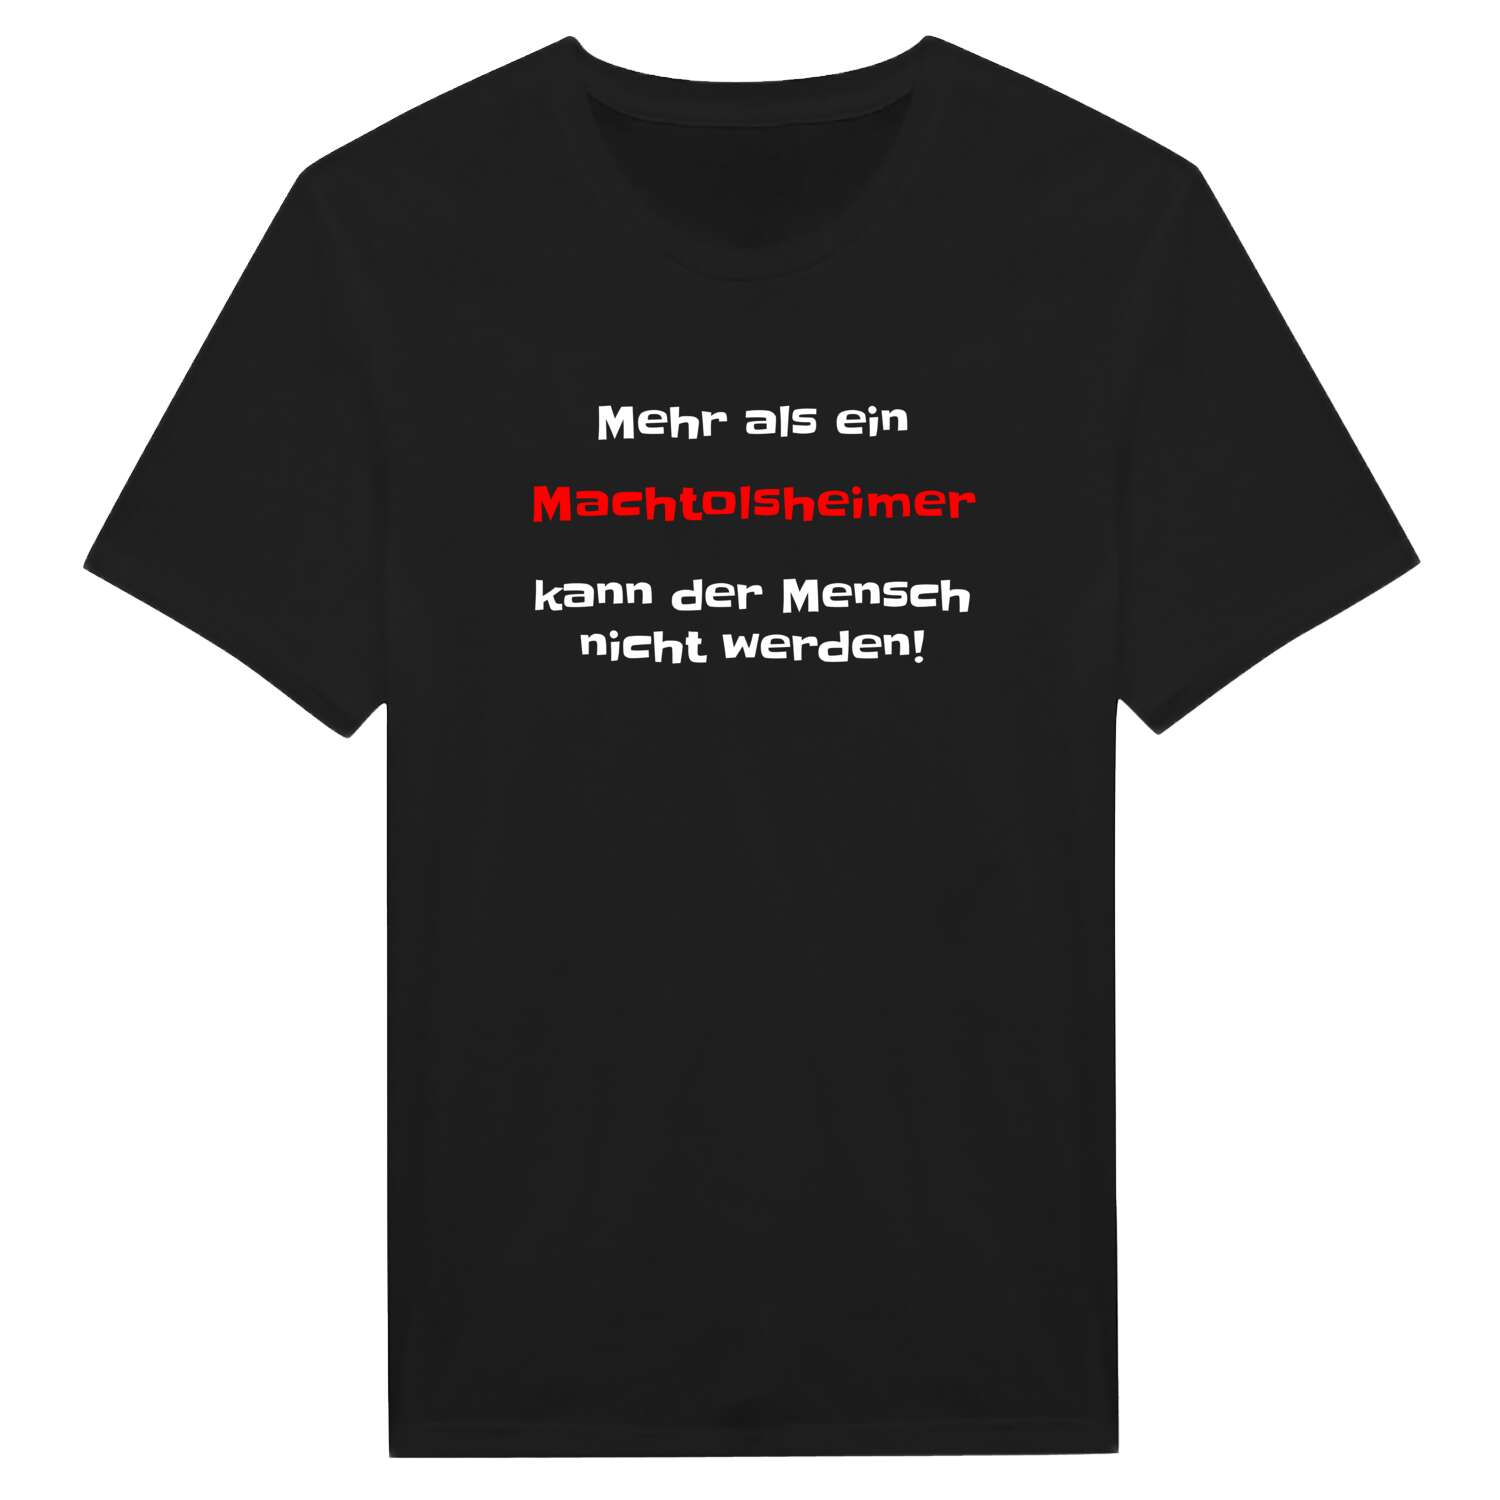 Machtolsheim T-Shirt »Mehr als ein«